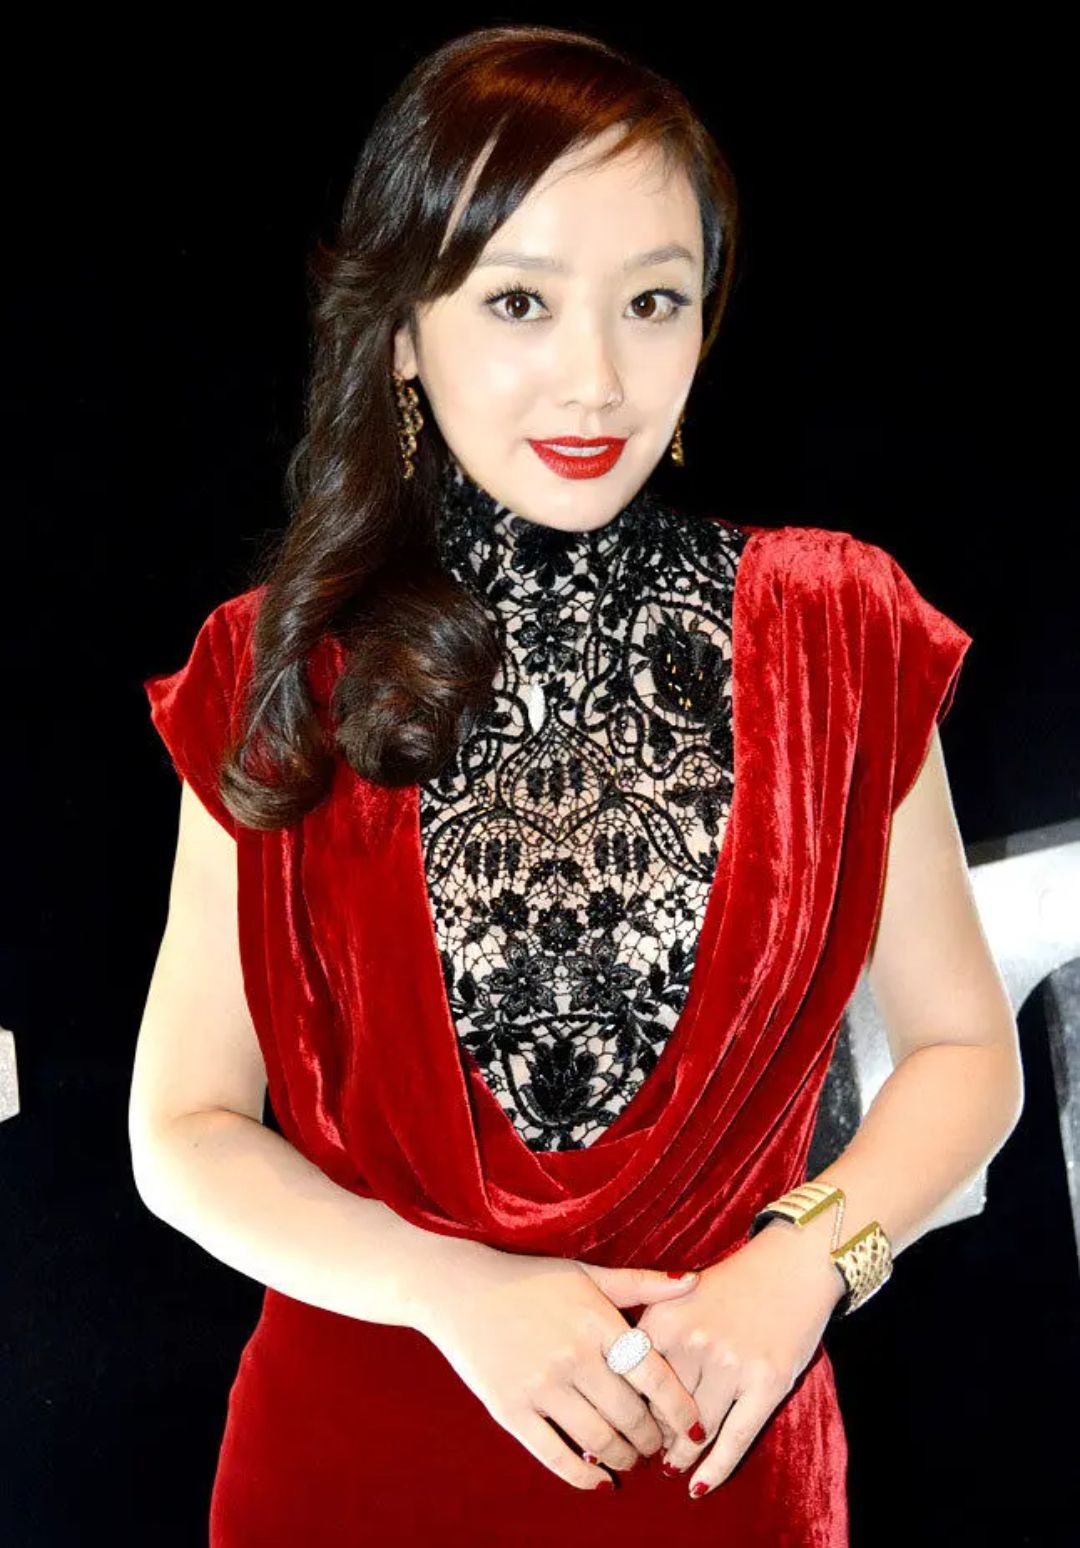 毕业于中央戏剧学院,北京美女演员王子瑜